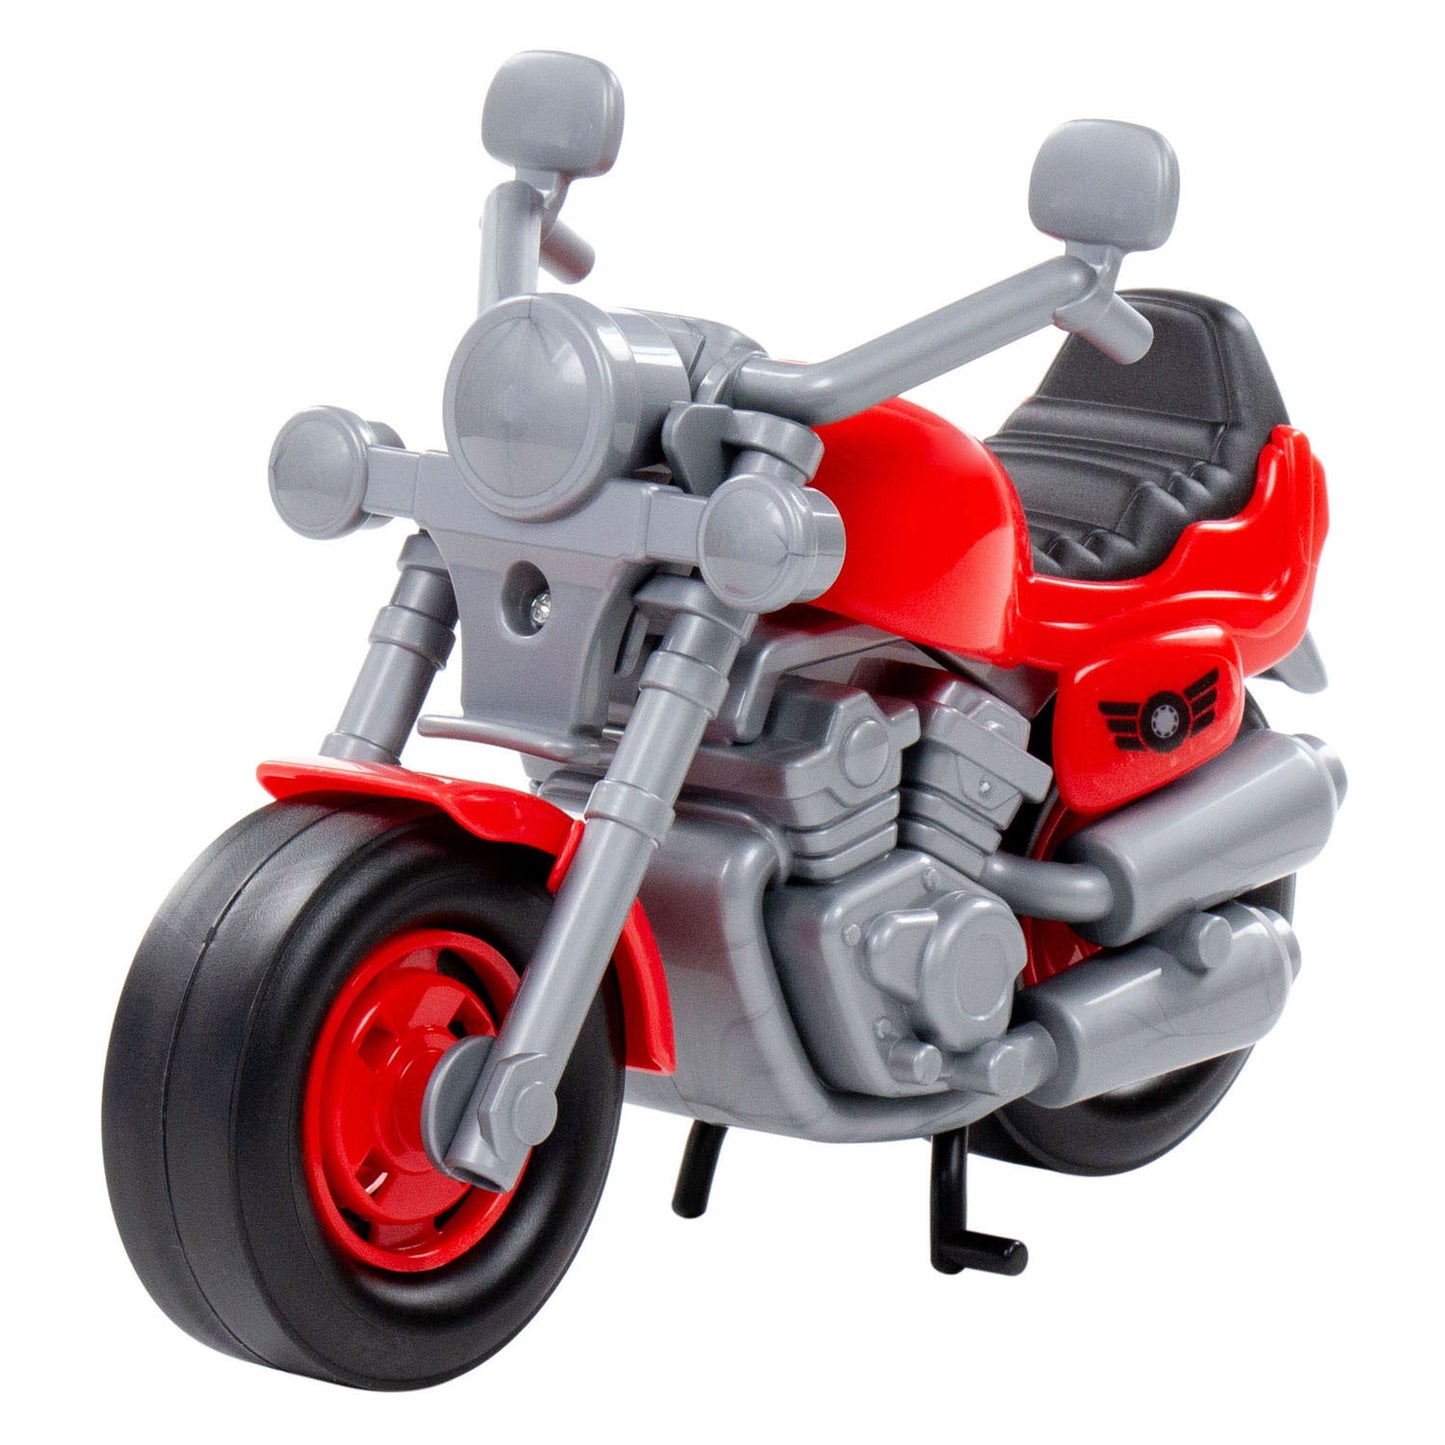 Cavallino Toys Cavallino Tour Motor rosso, 25 cm